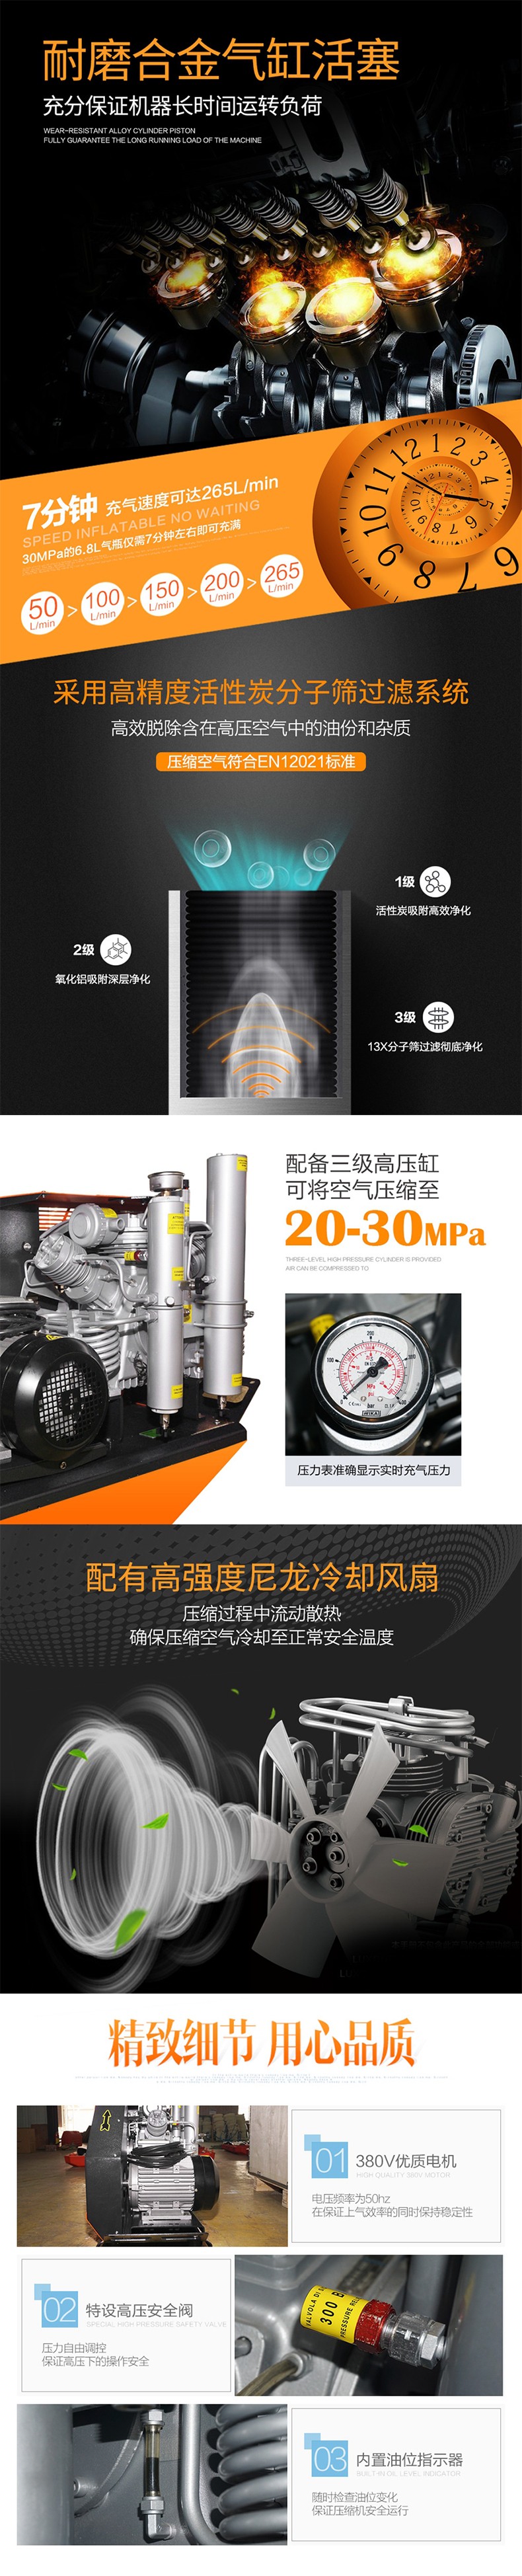 海固HG-CQ265空气呼吸器充气泵 高压呼吸空气压缩机图片2